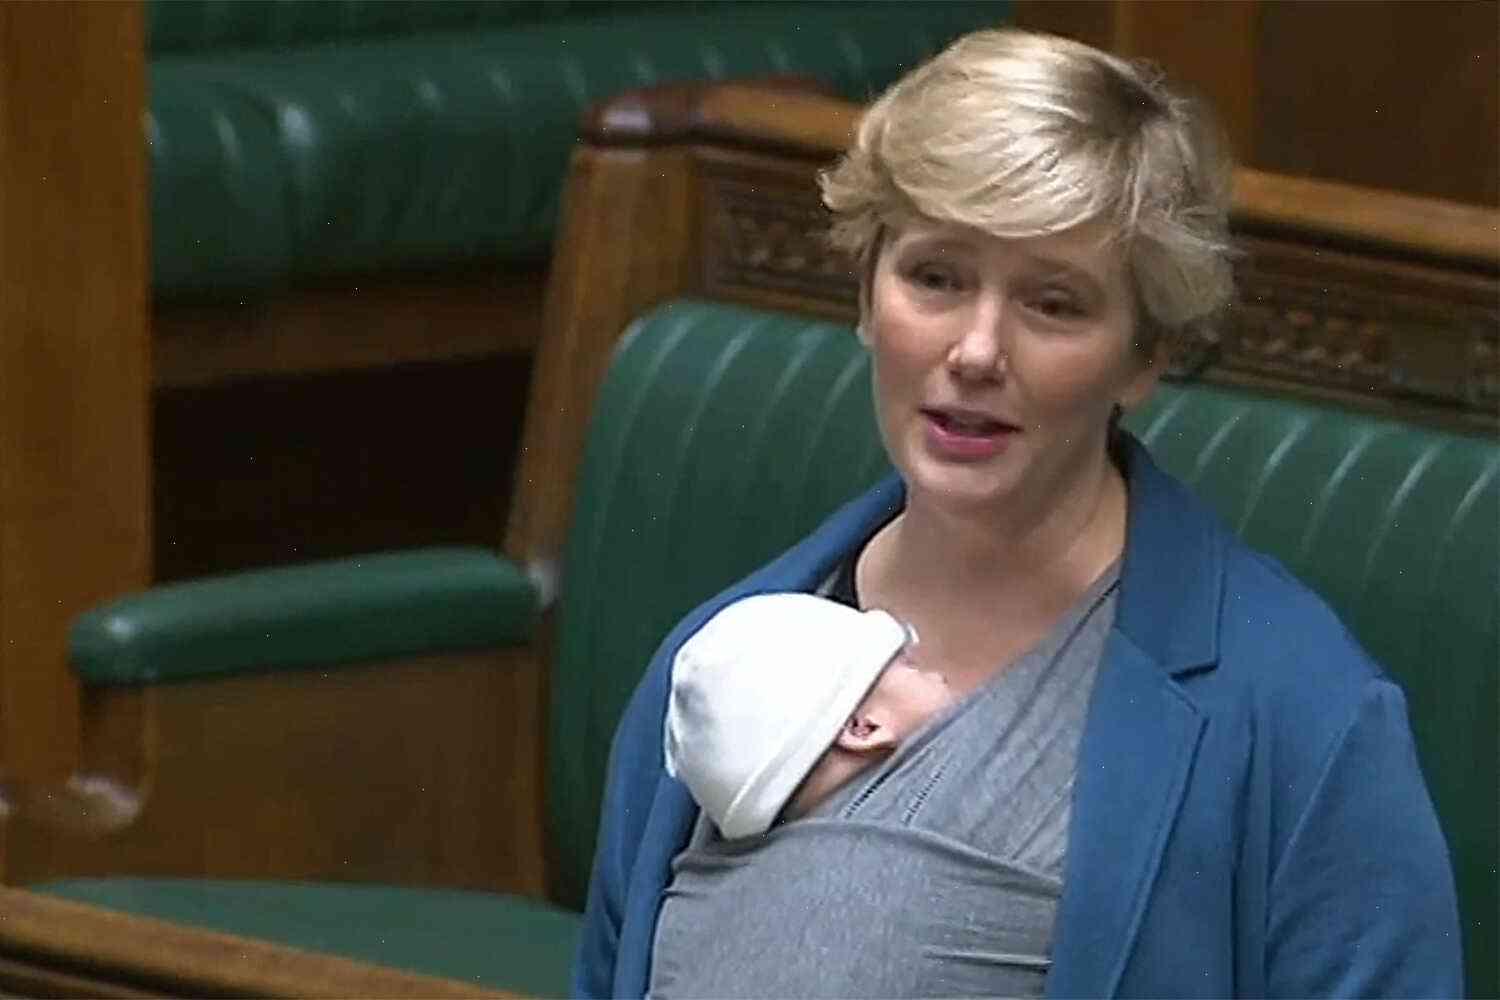 Pregnant MP on speaker's warning